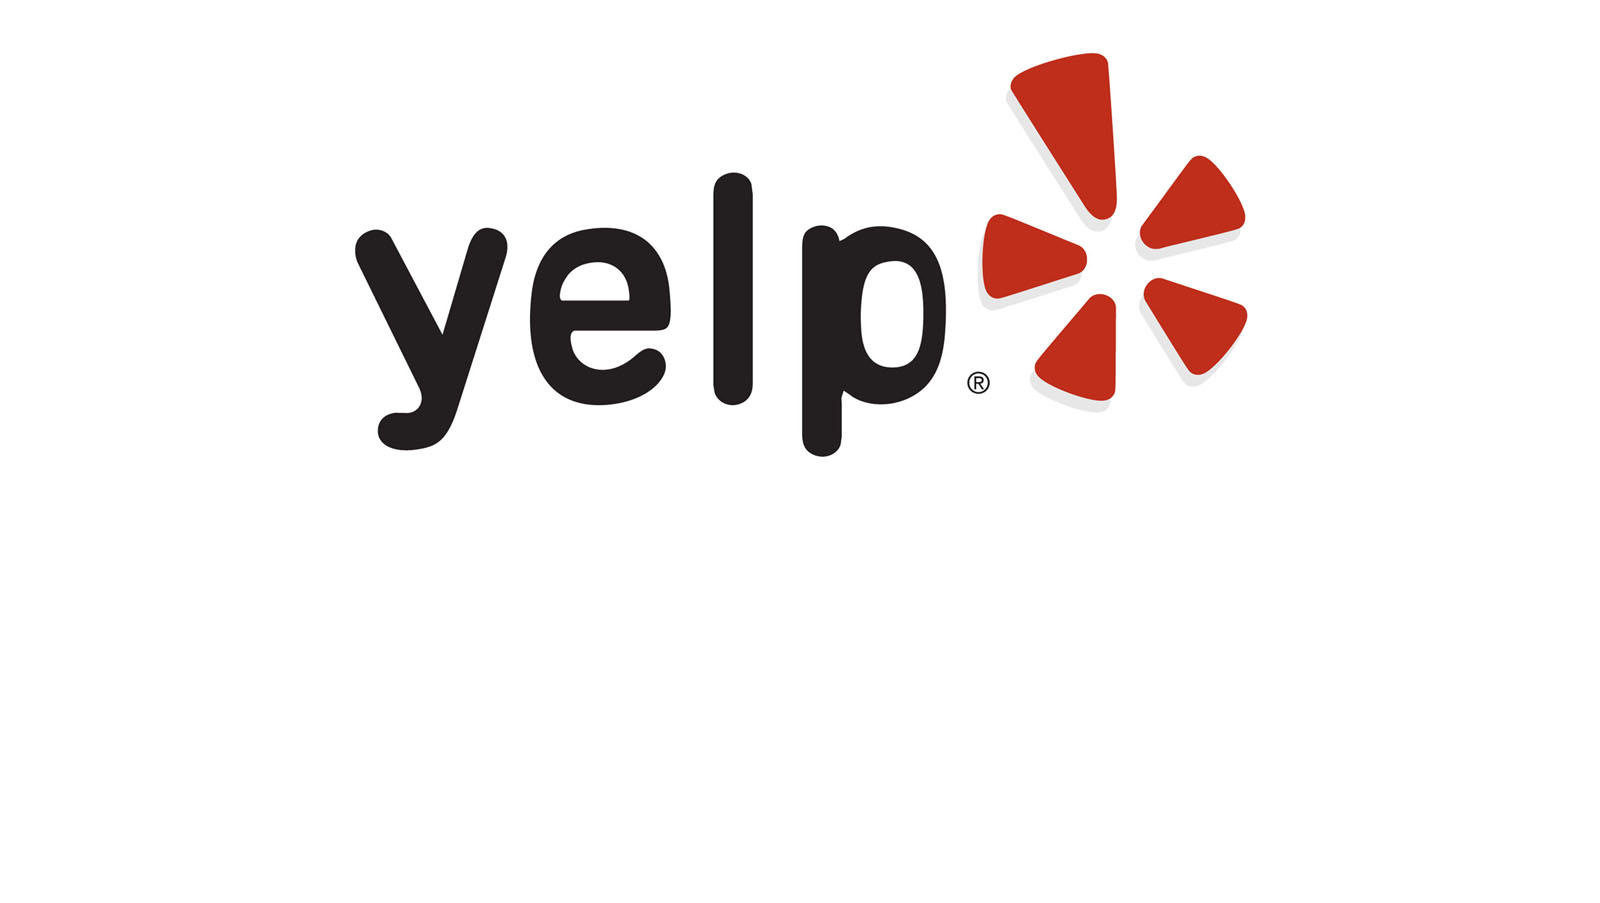 Companies: Yelp